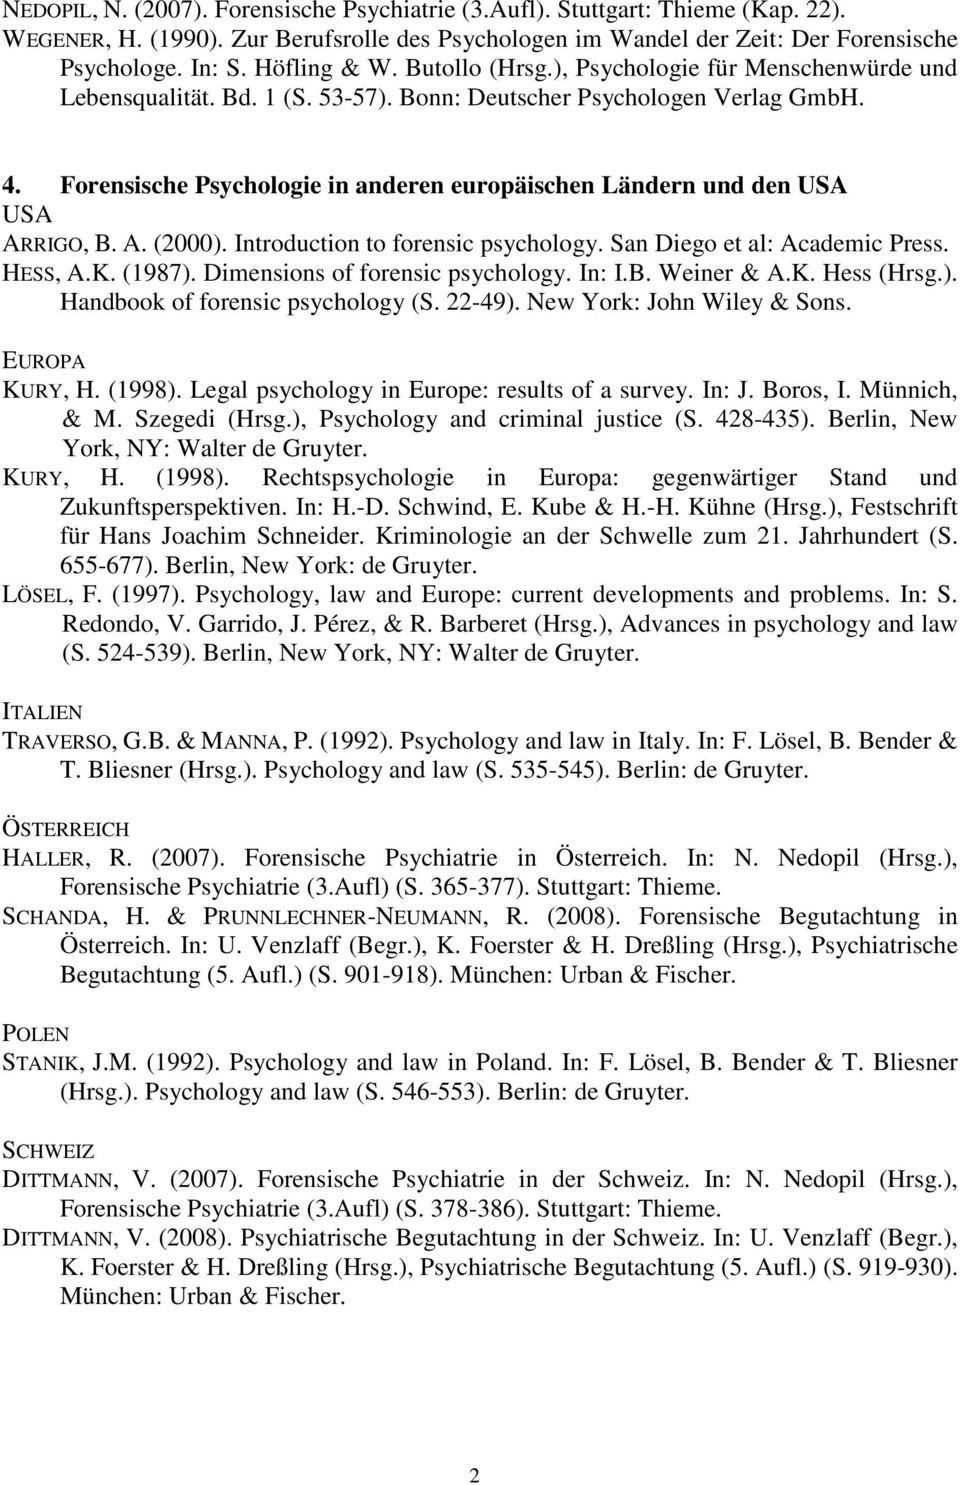 Forensische Psychologie in anderen europäischen Ländern und den USA USA ARRIGO, B. A. (2000). Introduction to forensic psychology. San Diego et al: Academic Press. HESS, A.K. (1987).